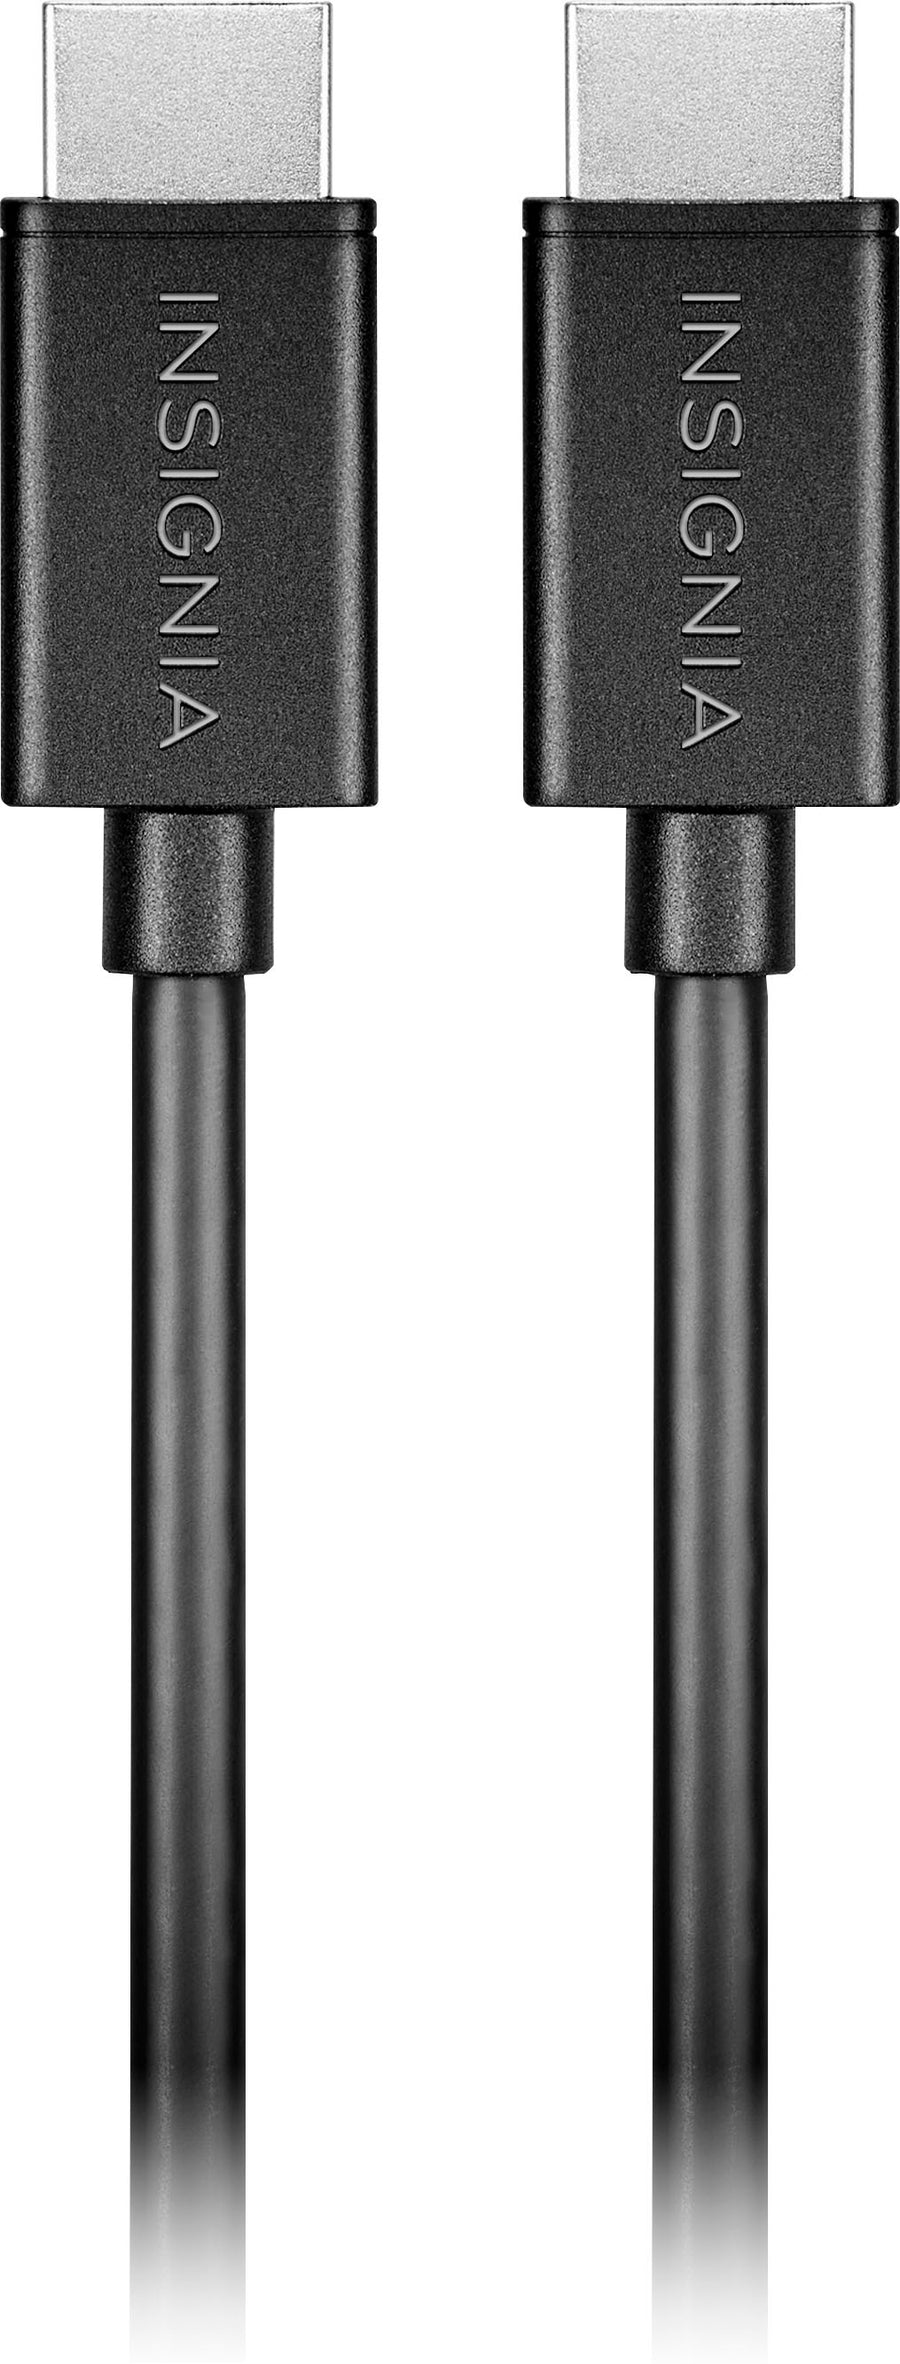 Insignia™ - 4' 4K Ultra HD HDMI Cable - Black_0